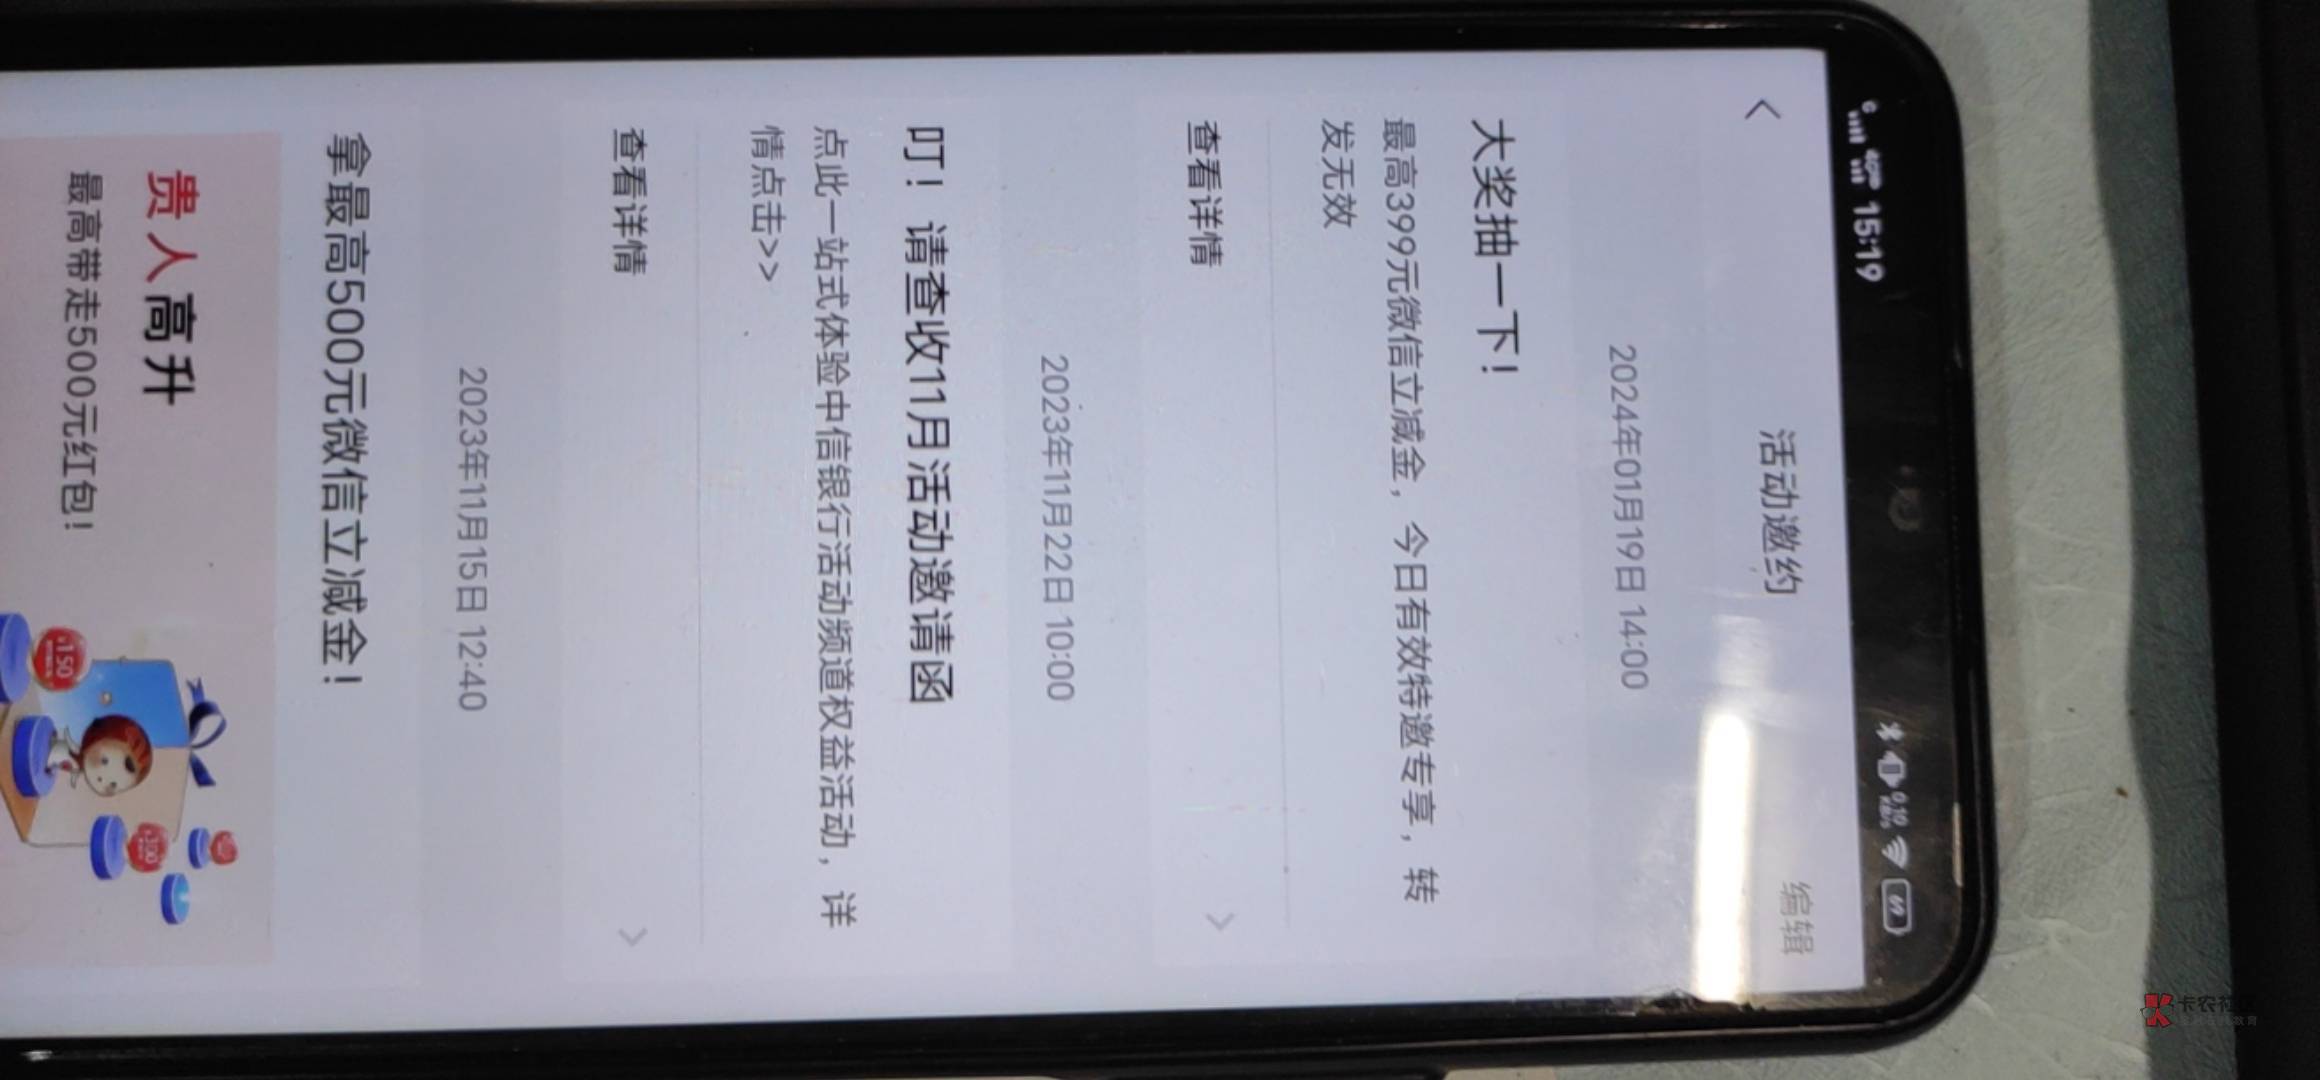 中信北京  好像开过卡app有信息

97 / 作者:离开你以后 / 